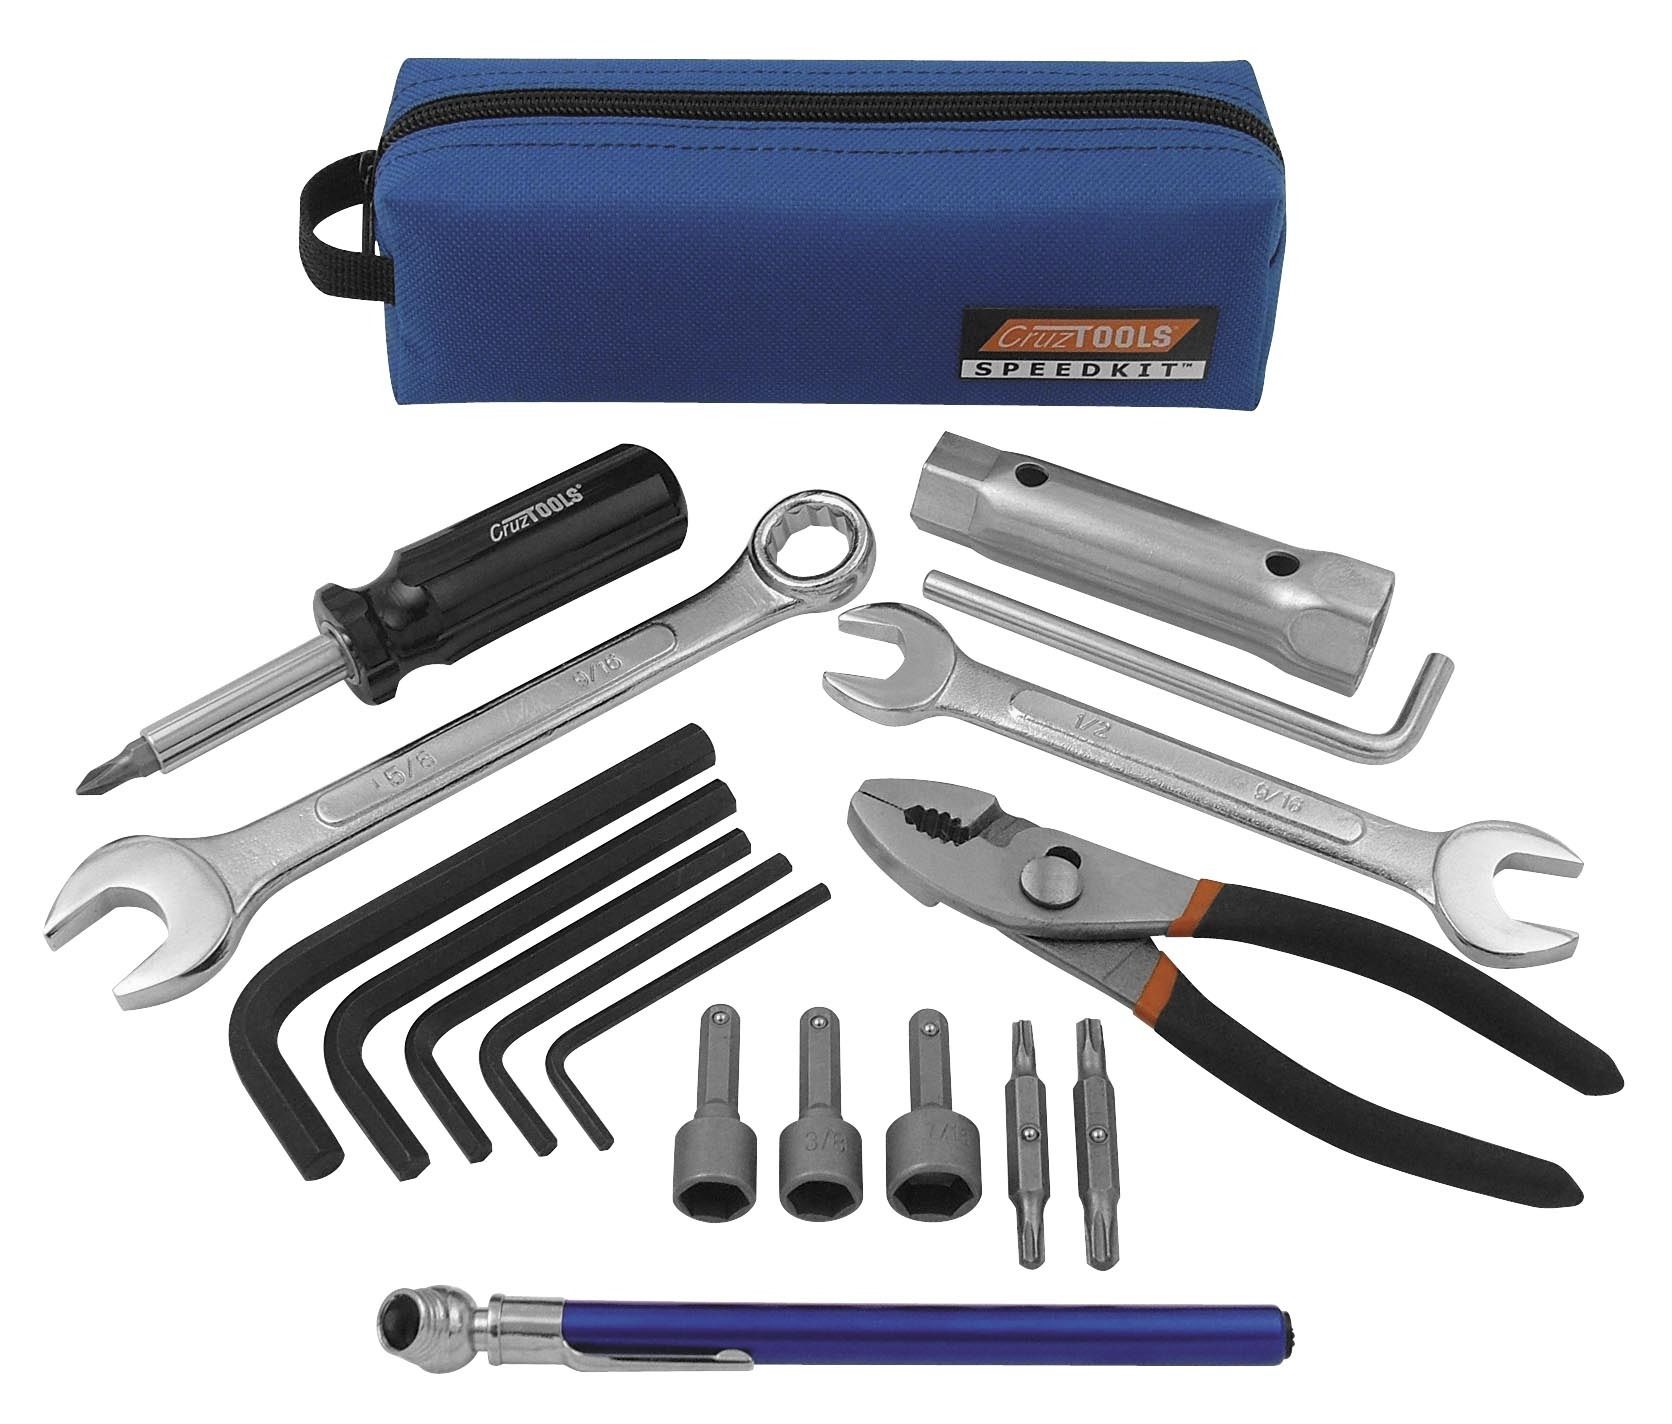 CruzTools Speedkit Tool Kits | 5% ($1.65) Off! - RevZilla